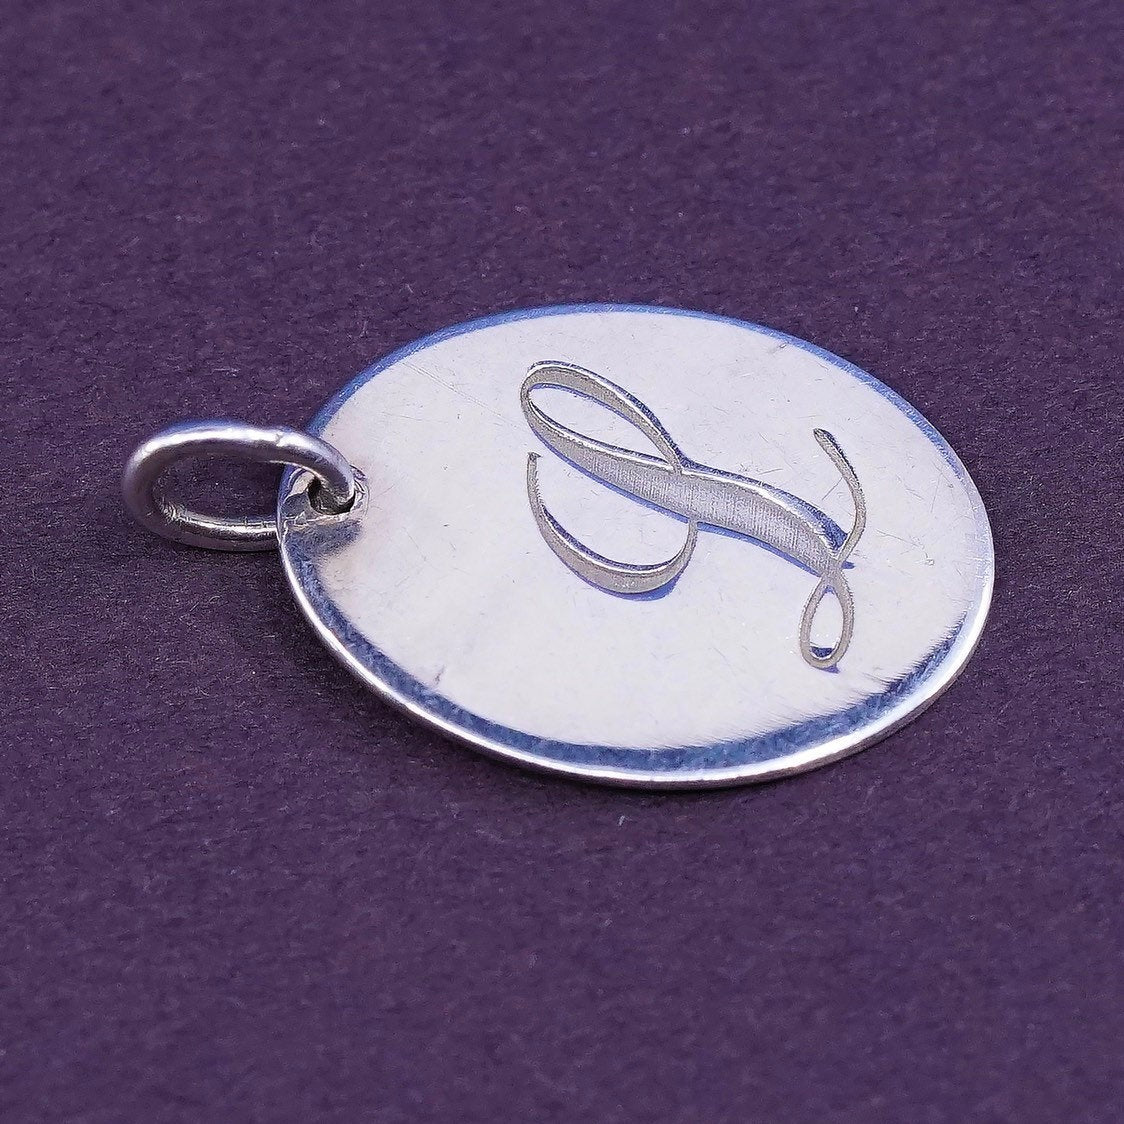 vtg MWS Sterling silver handmade initial "L" pendant, 925 tag charm